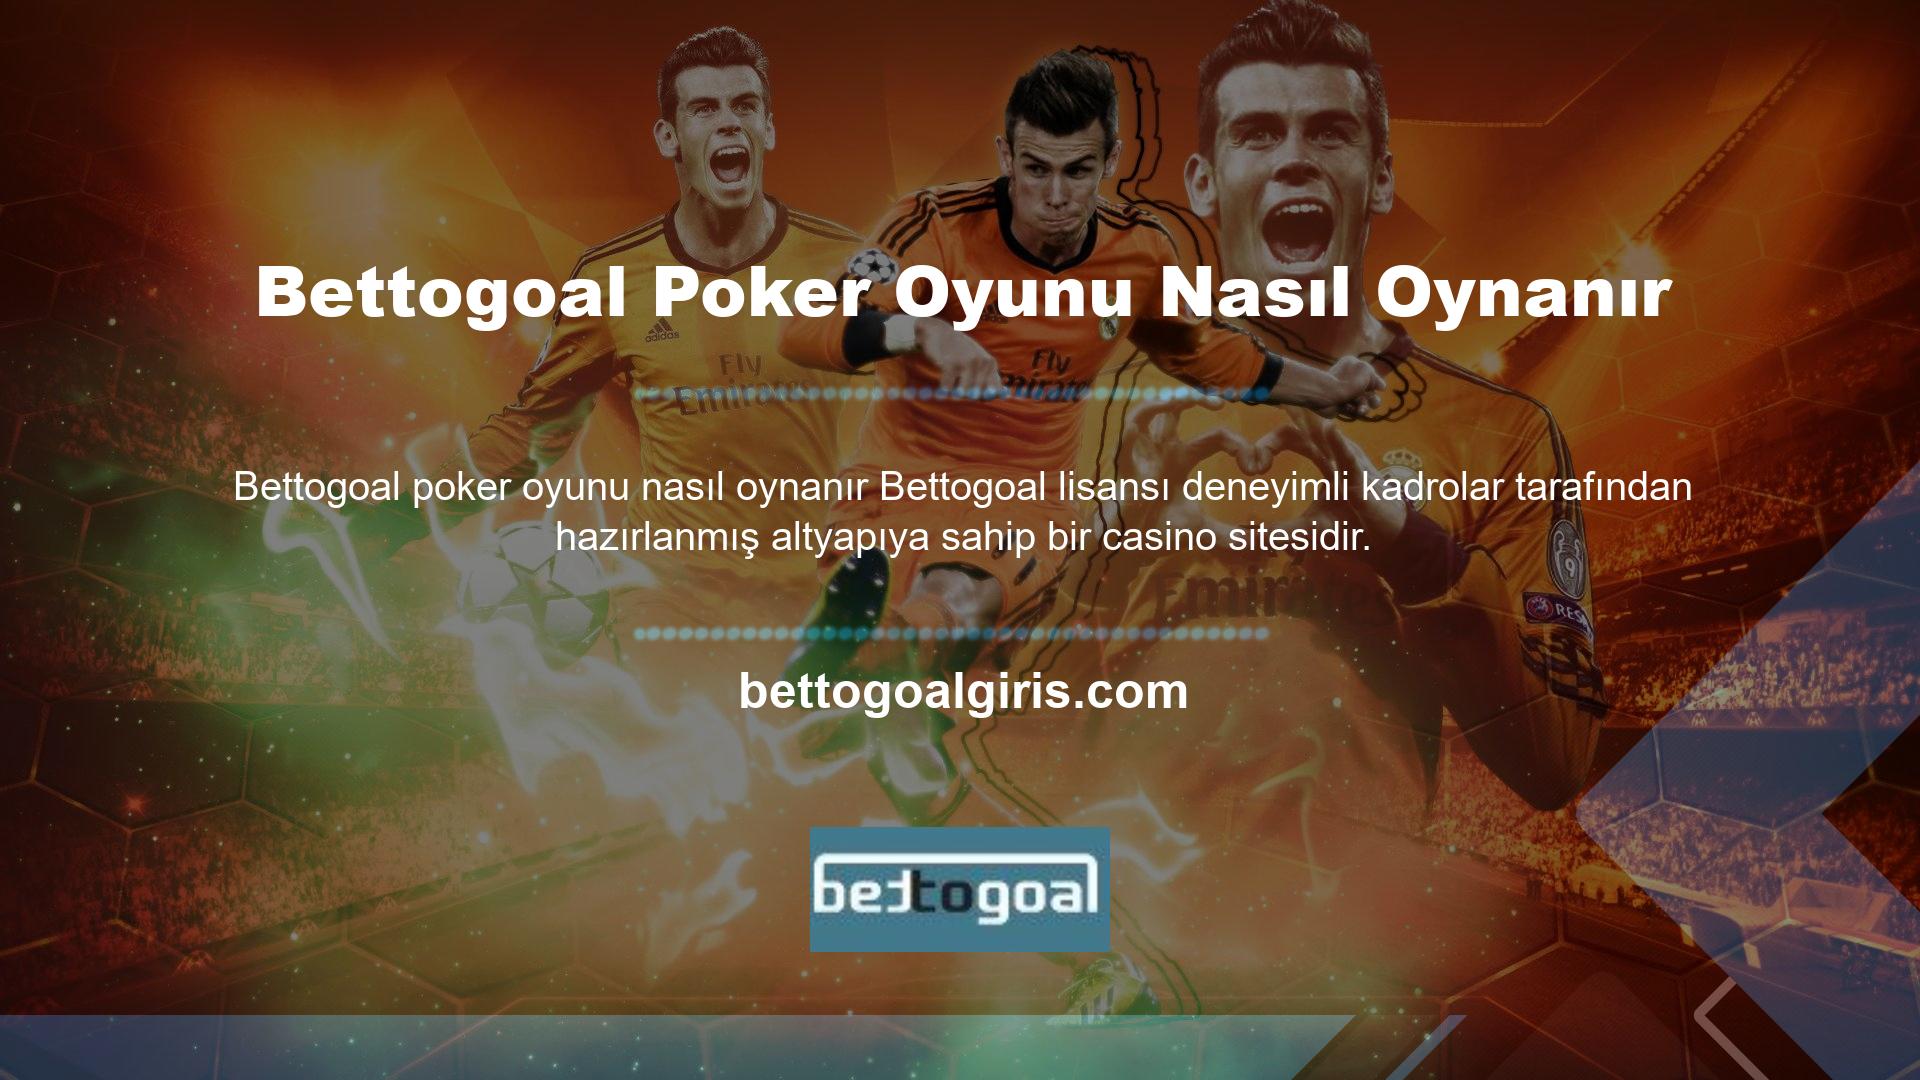 Bettogoal poker oyunu nasıl oynanır Bettogoal bahis sitesi diğer bahis sitelerinden farklı olarak bu oyunu tüm oyun tutkunlarına her alanda üstünlük sağlamaları için sunmaktadır